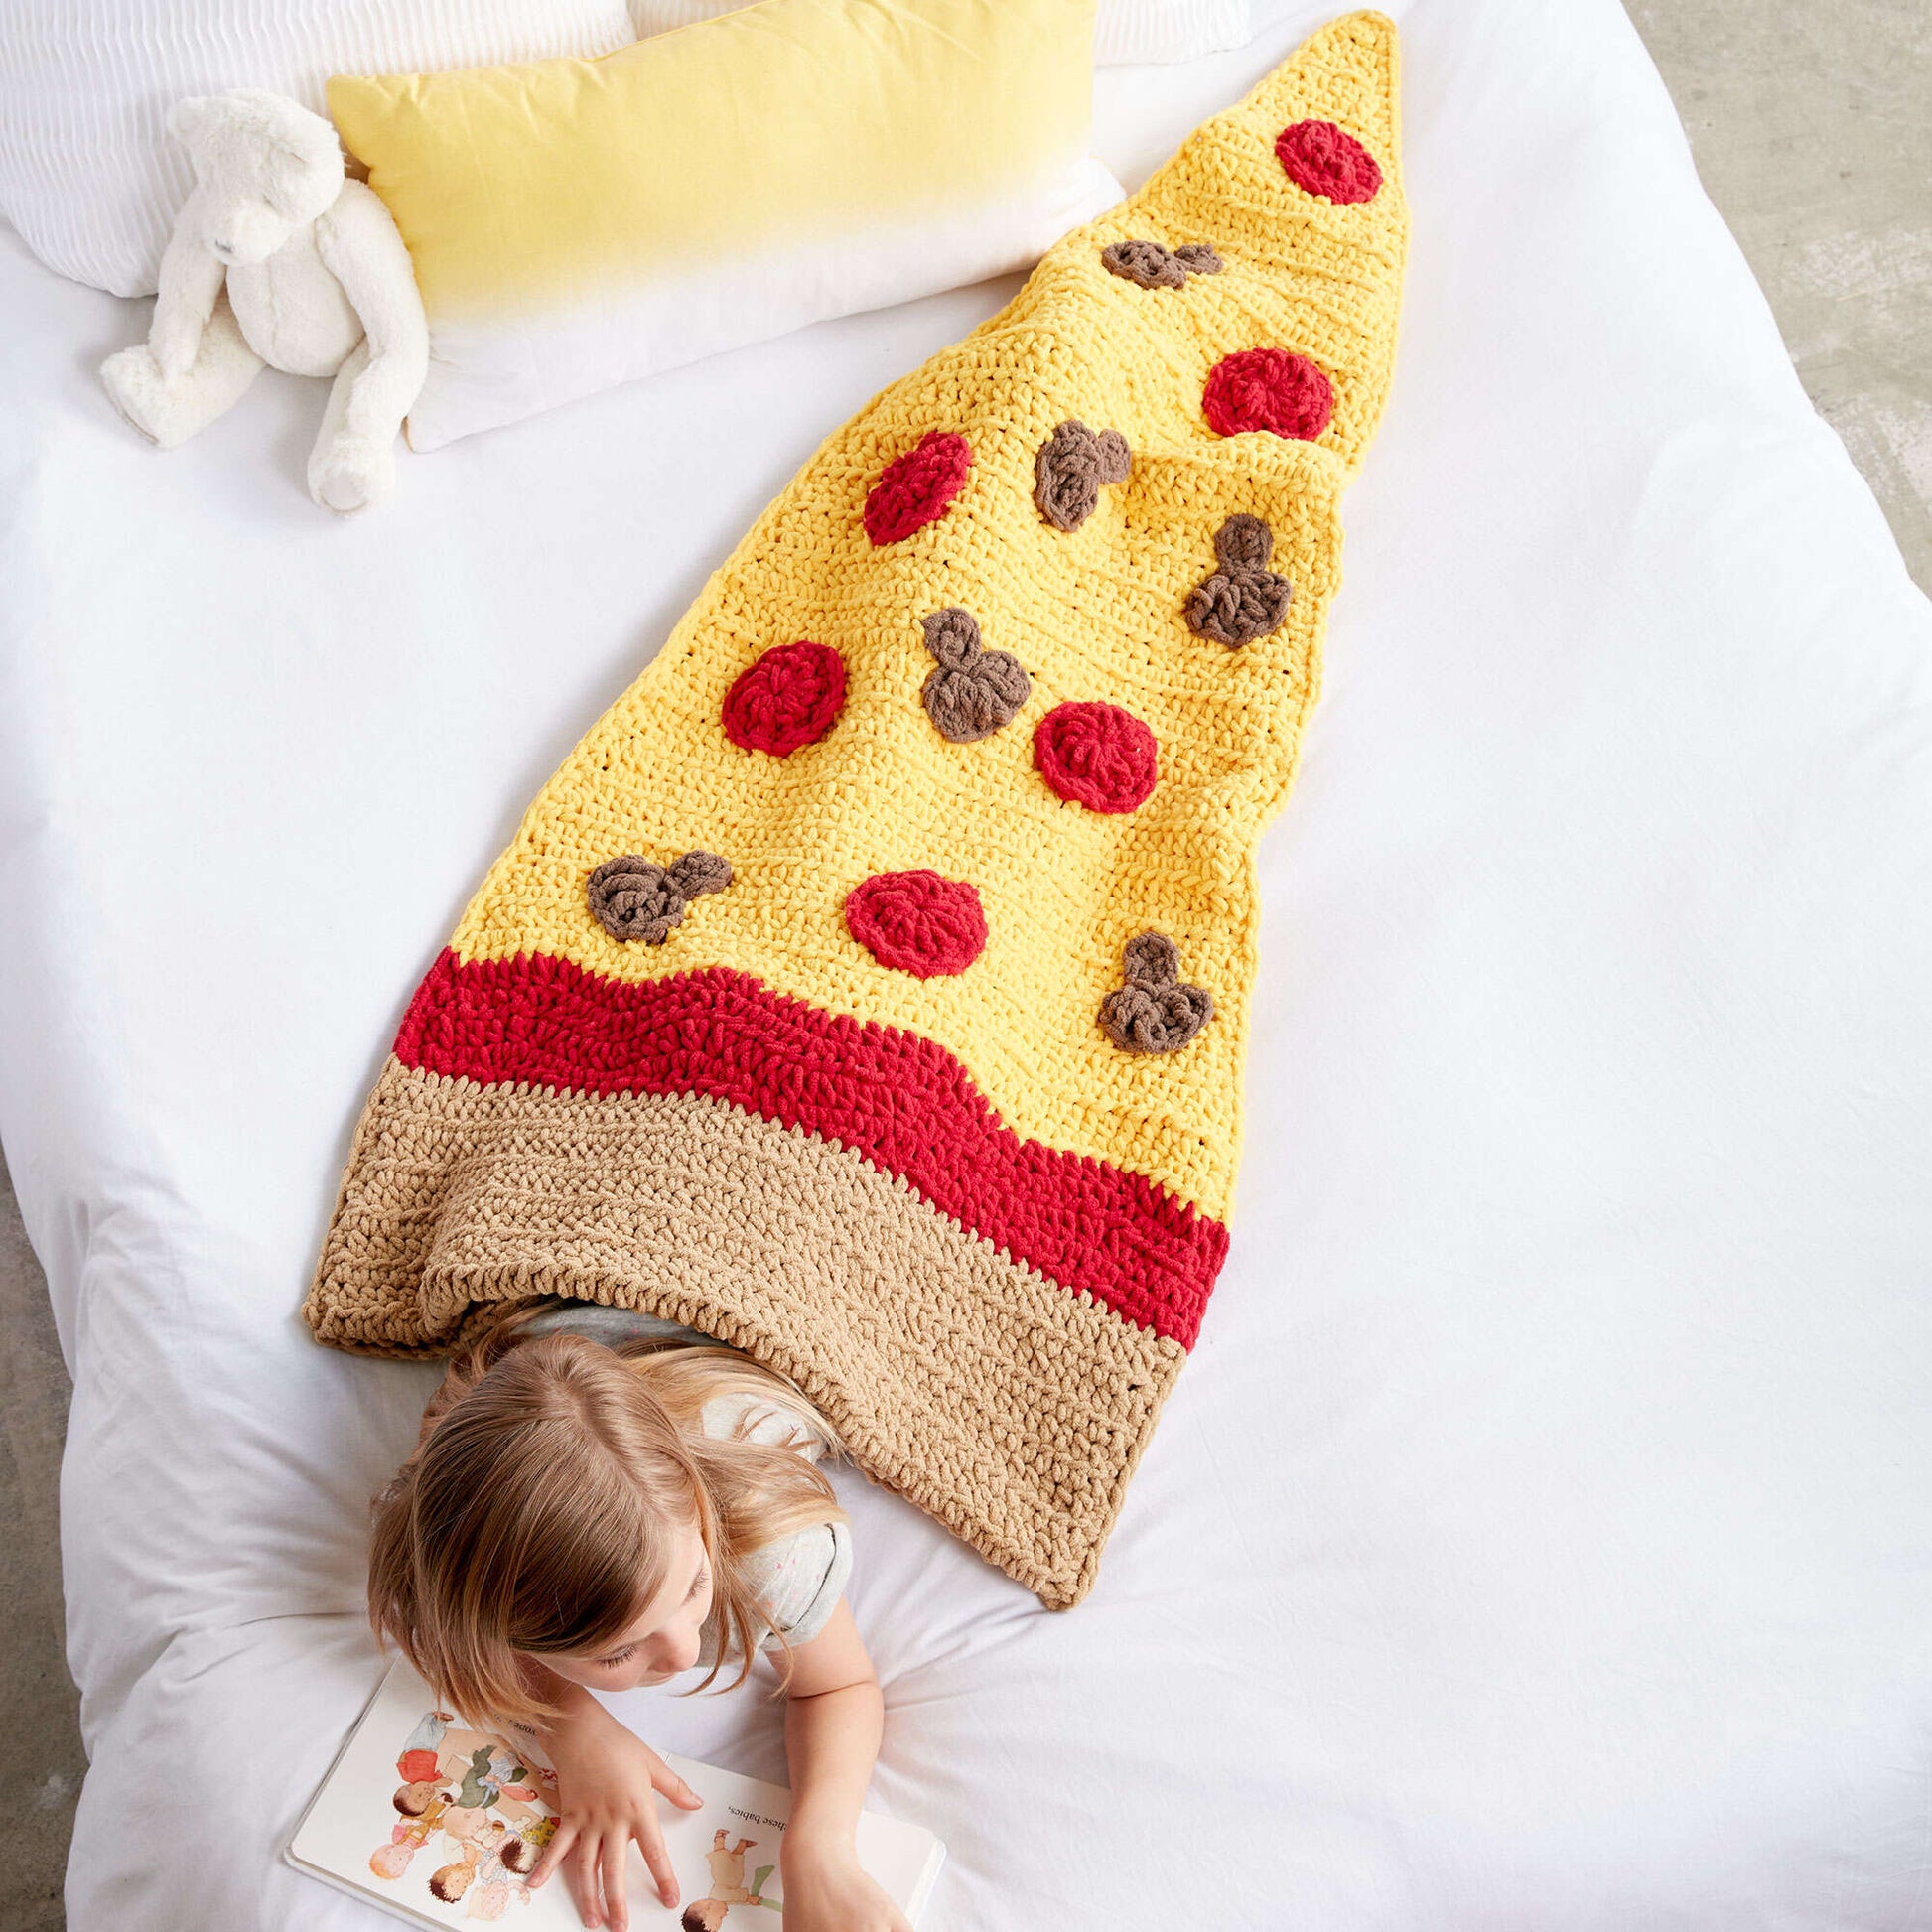 Bernat Pizza Party Crochet Snuggle Sack Pattern